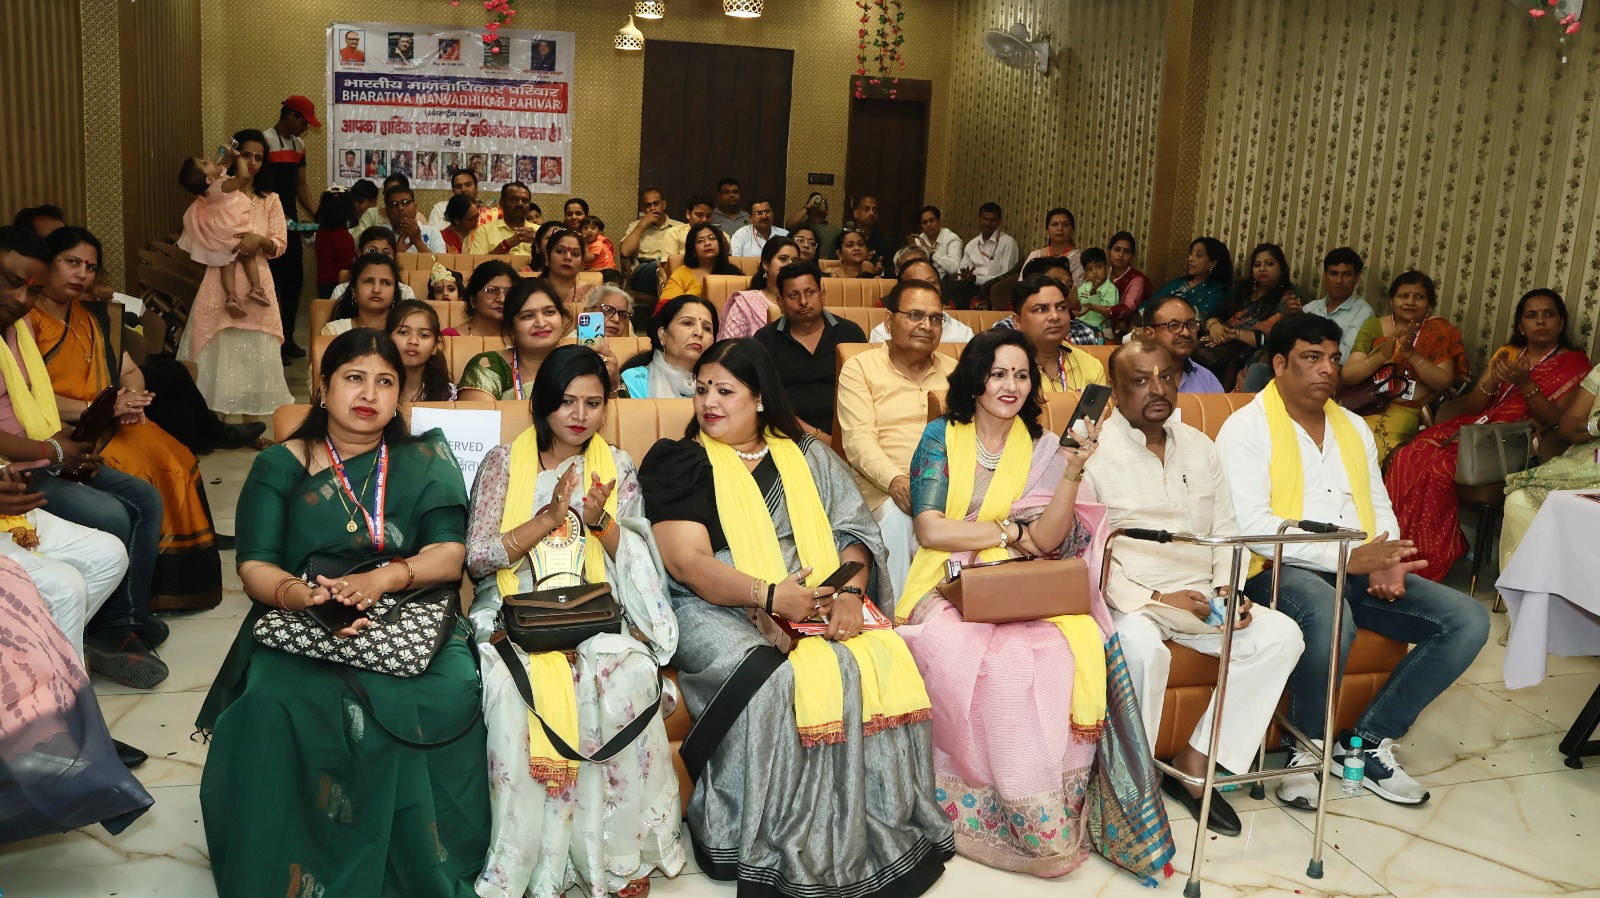 भारतीय मानवाधिकार परिवार ने नव वर्ष पर किया गोष्ठी का आयोजन